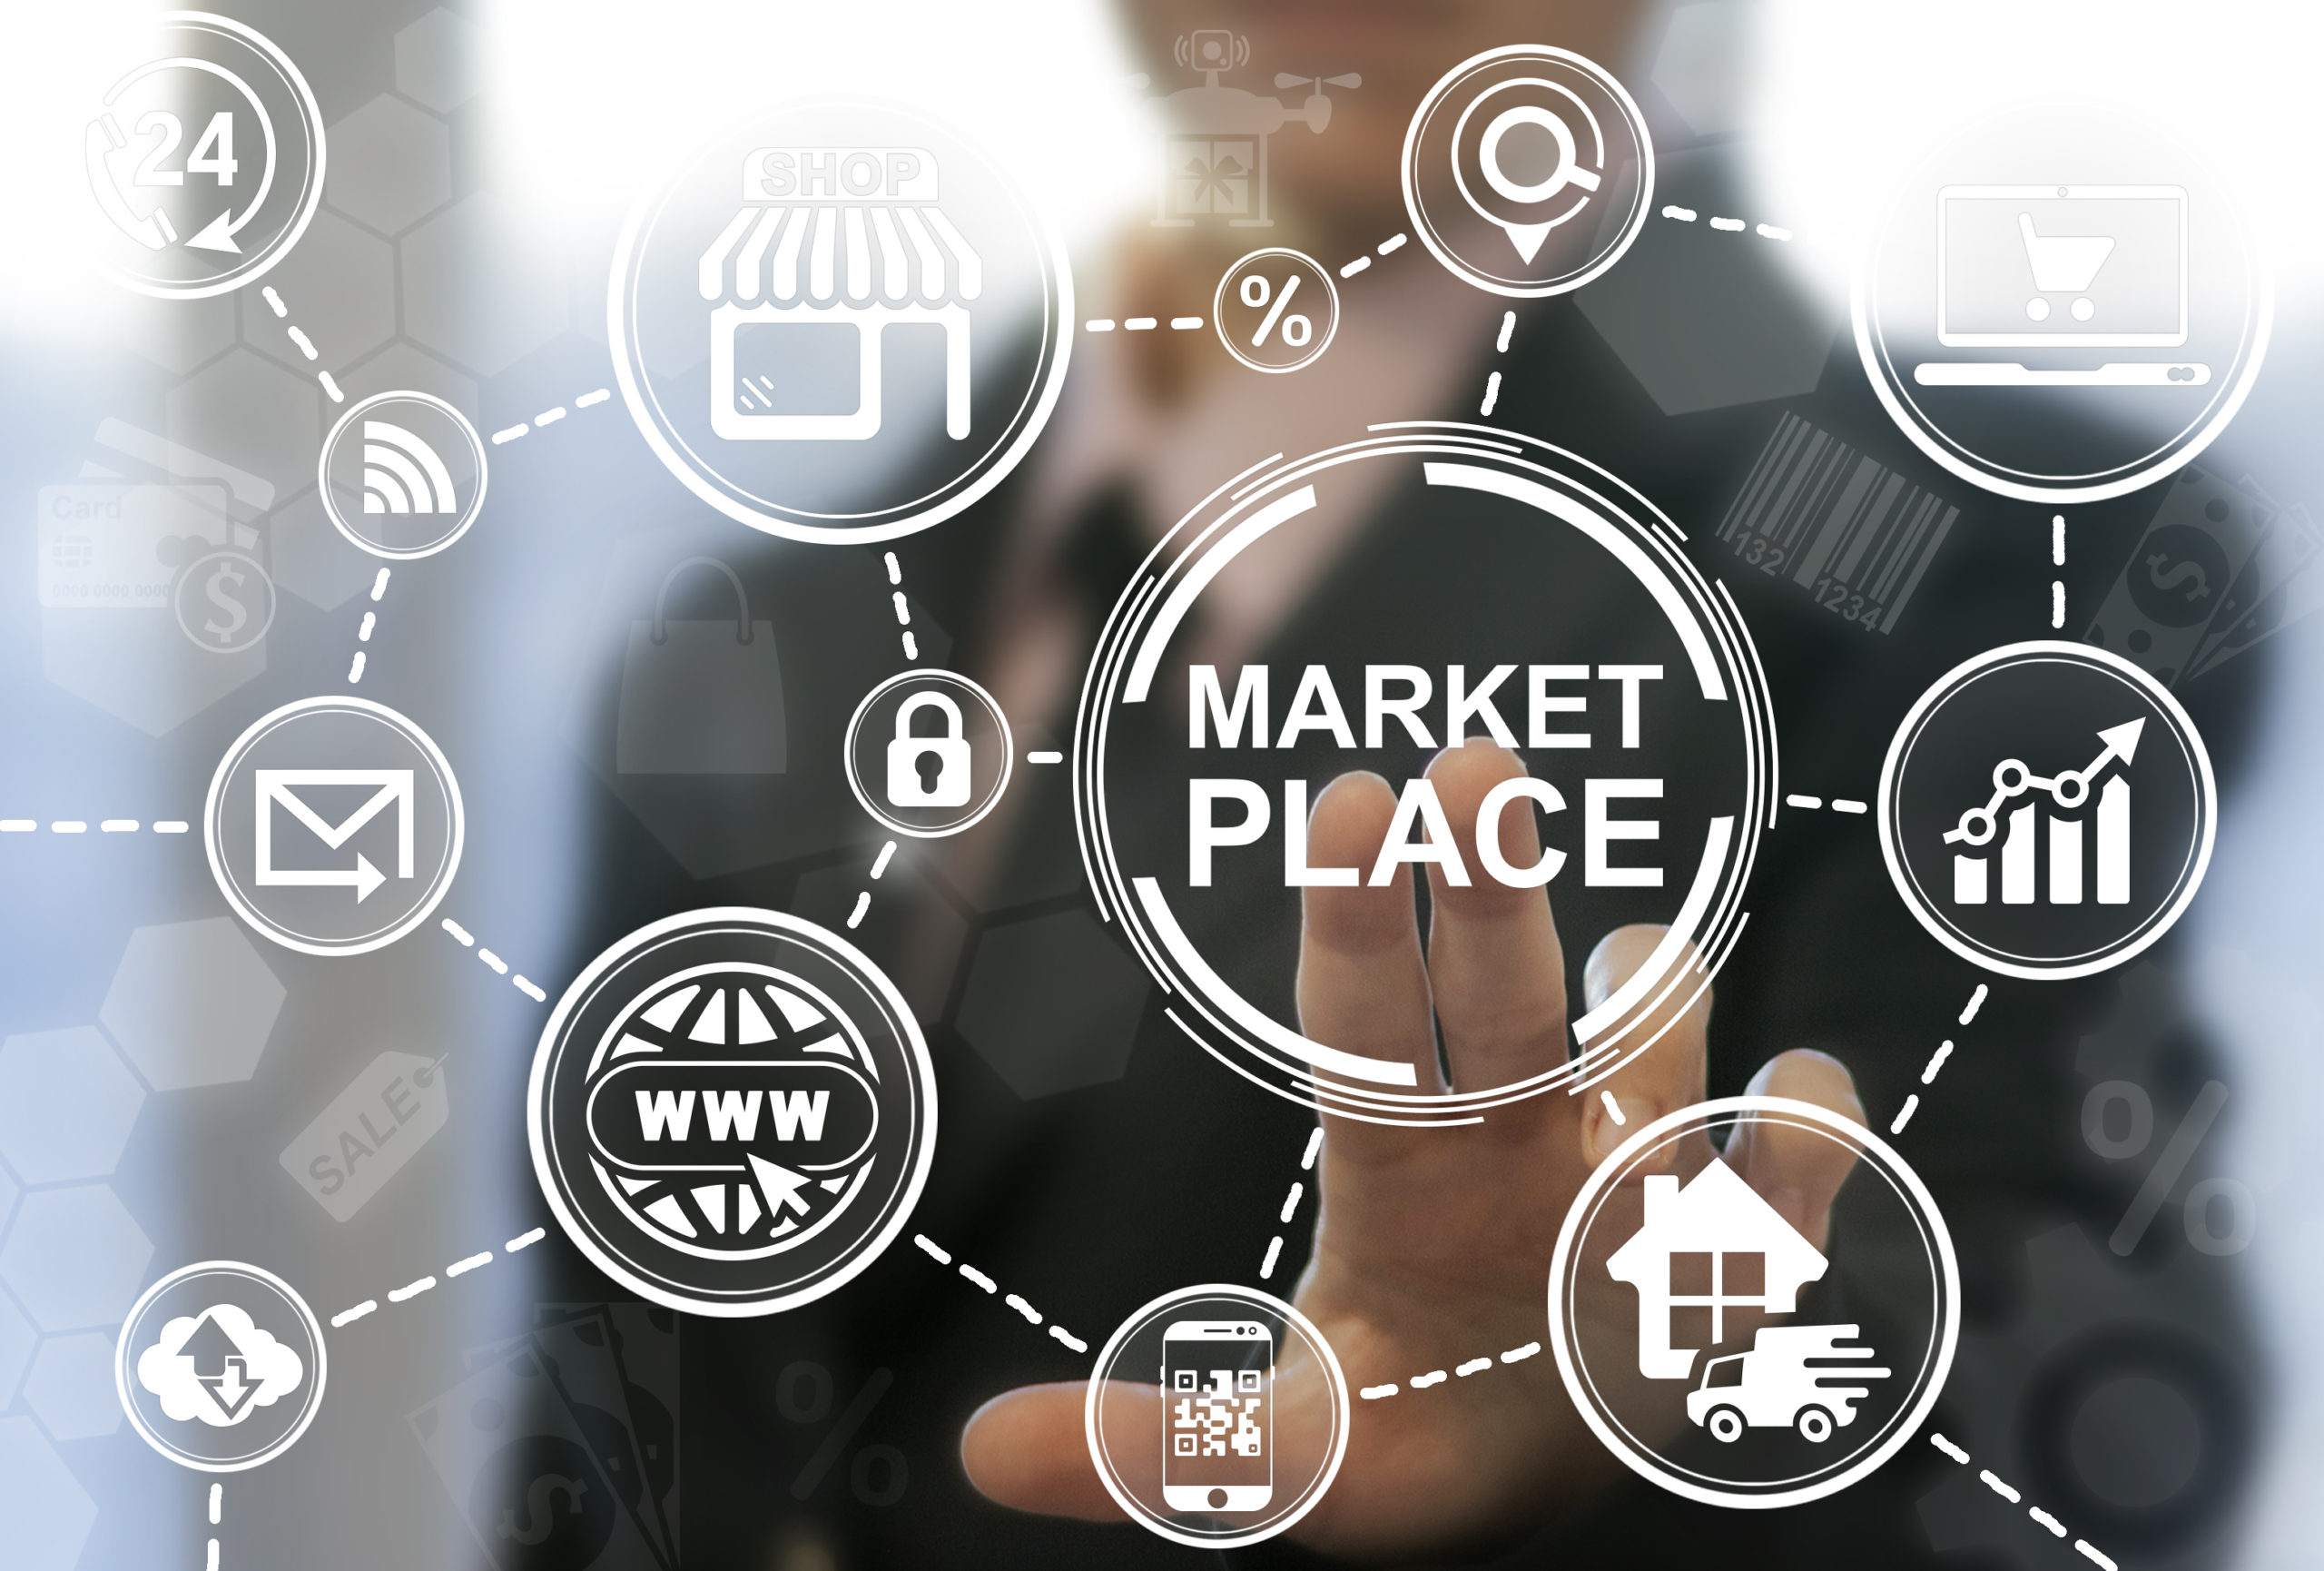 multi-vendor marketplaces are the future of retail